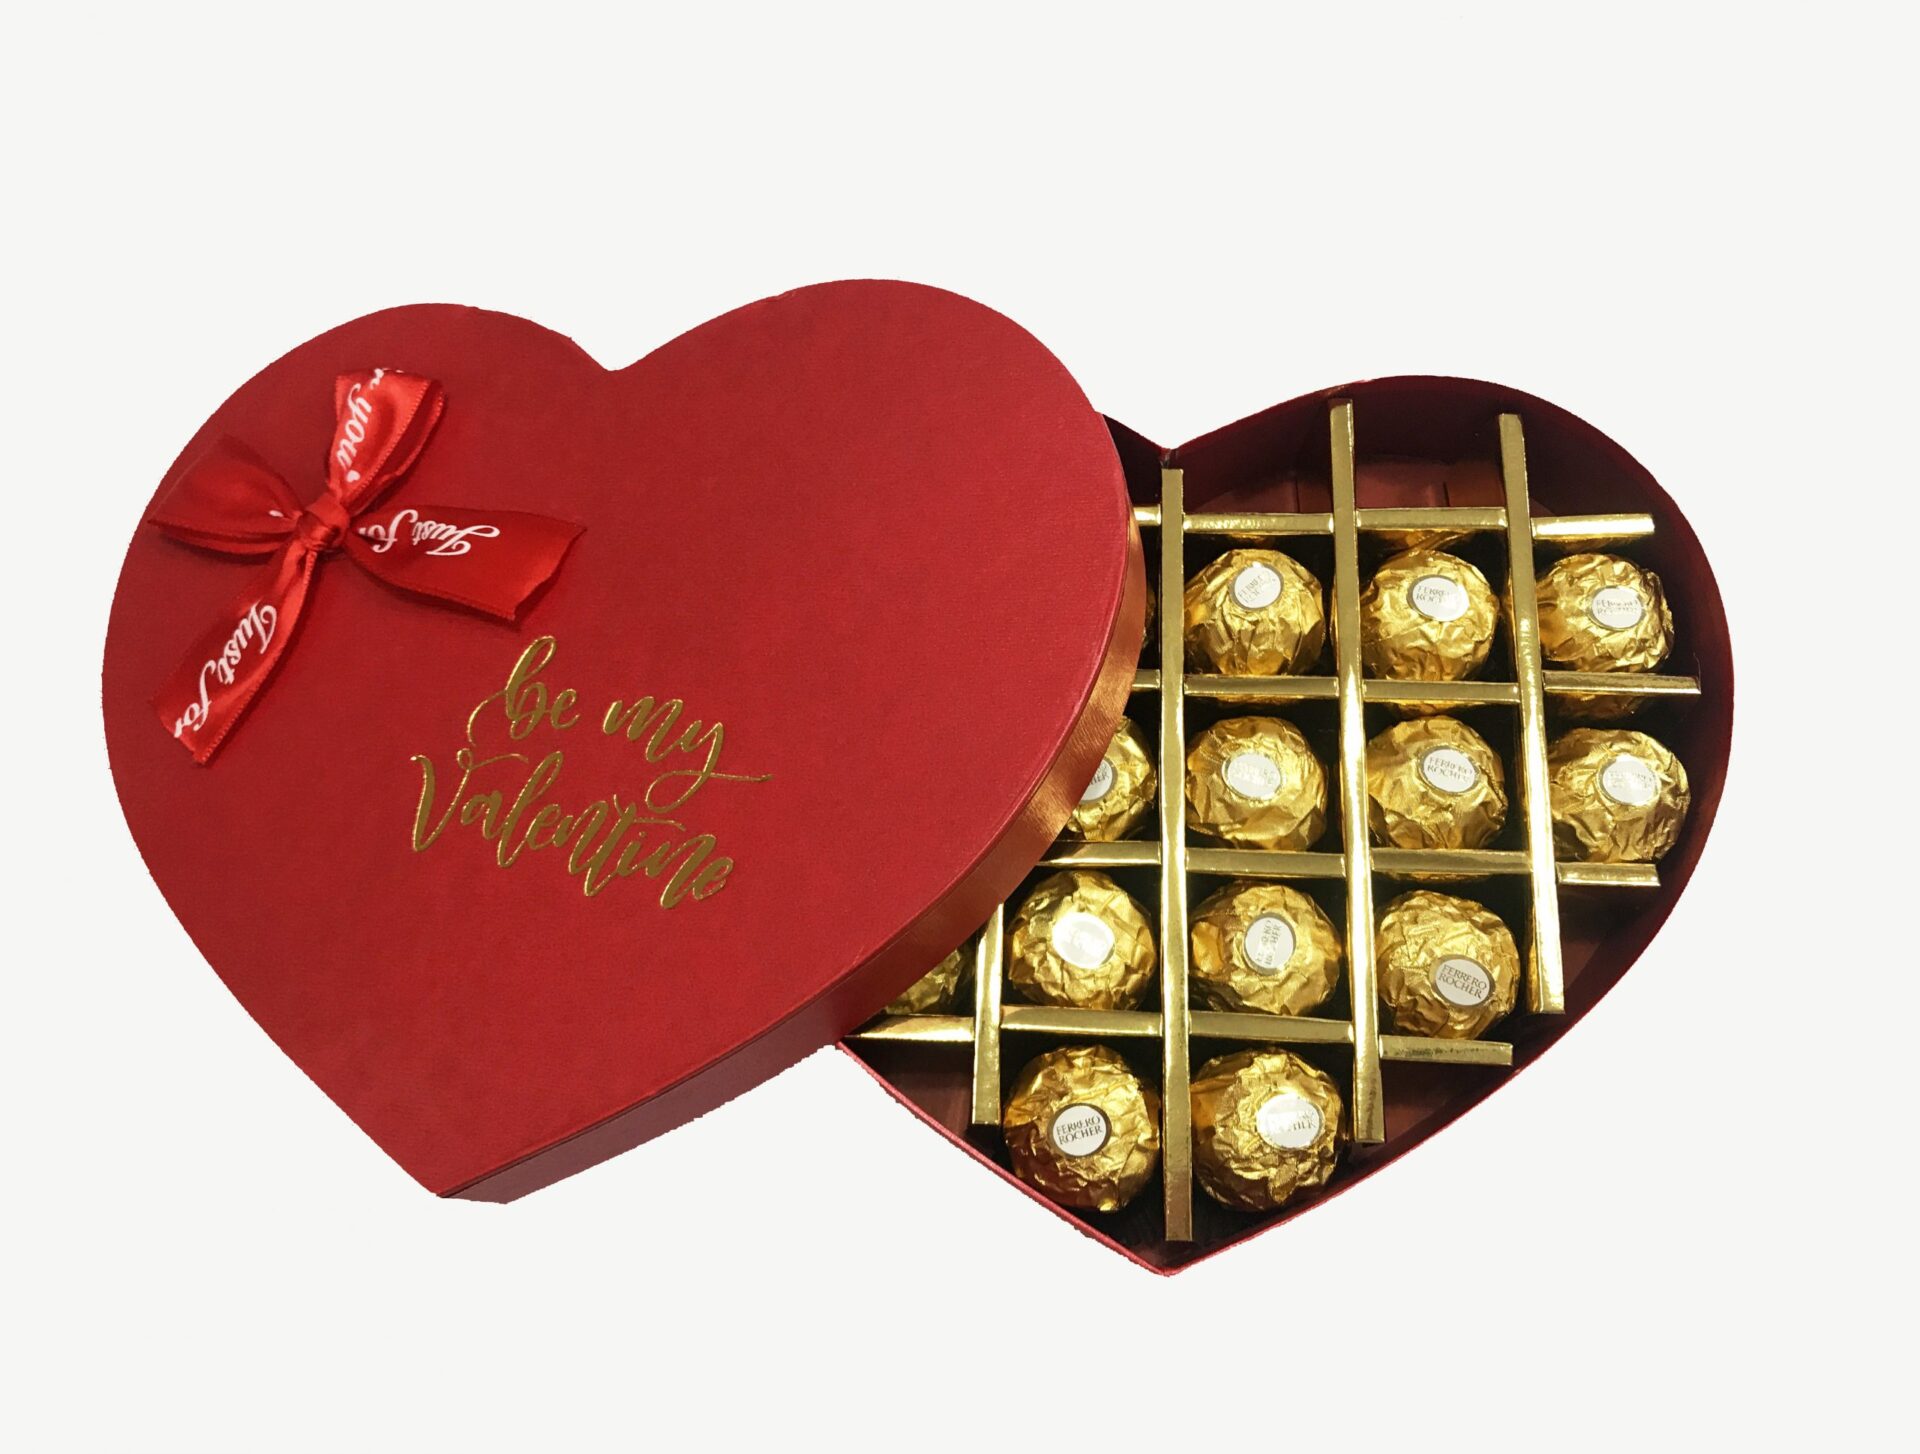 Trào lưu tặng quà trái tim đang lan tỏa khắp nơi, và socola Ferrero trái tim được đánh giá là một lựa chọn hoàn hảo. Hãy cùng nhau đến và khám phá hộp quà đầy bất ngờ này, và tìm hiểu tại sao với socola Ferrero trái tim, món quà của bạn không thể sai lầm.